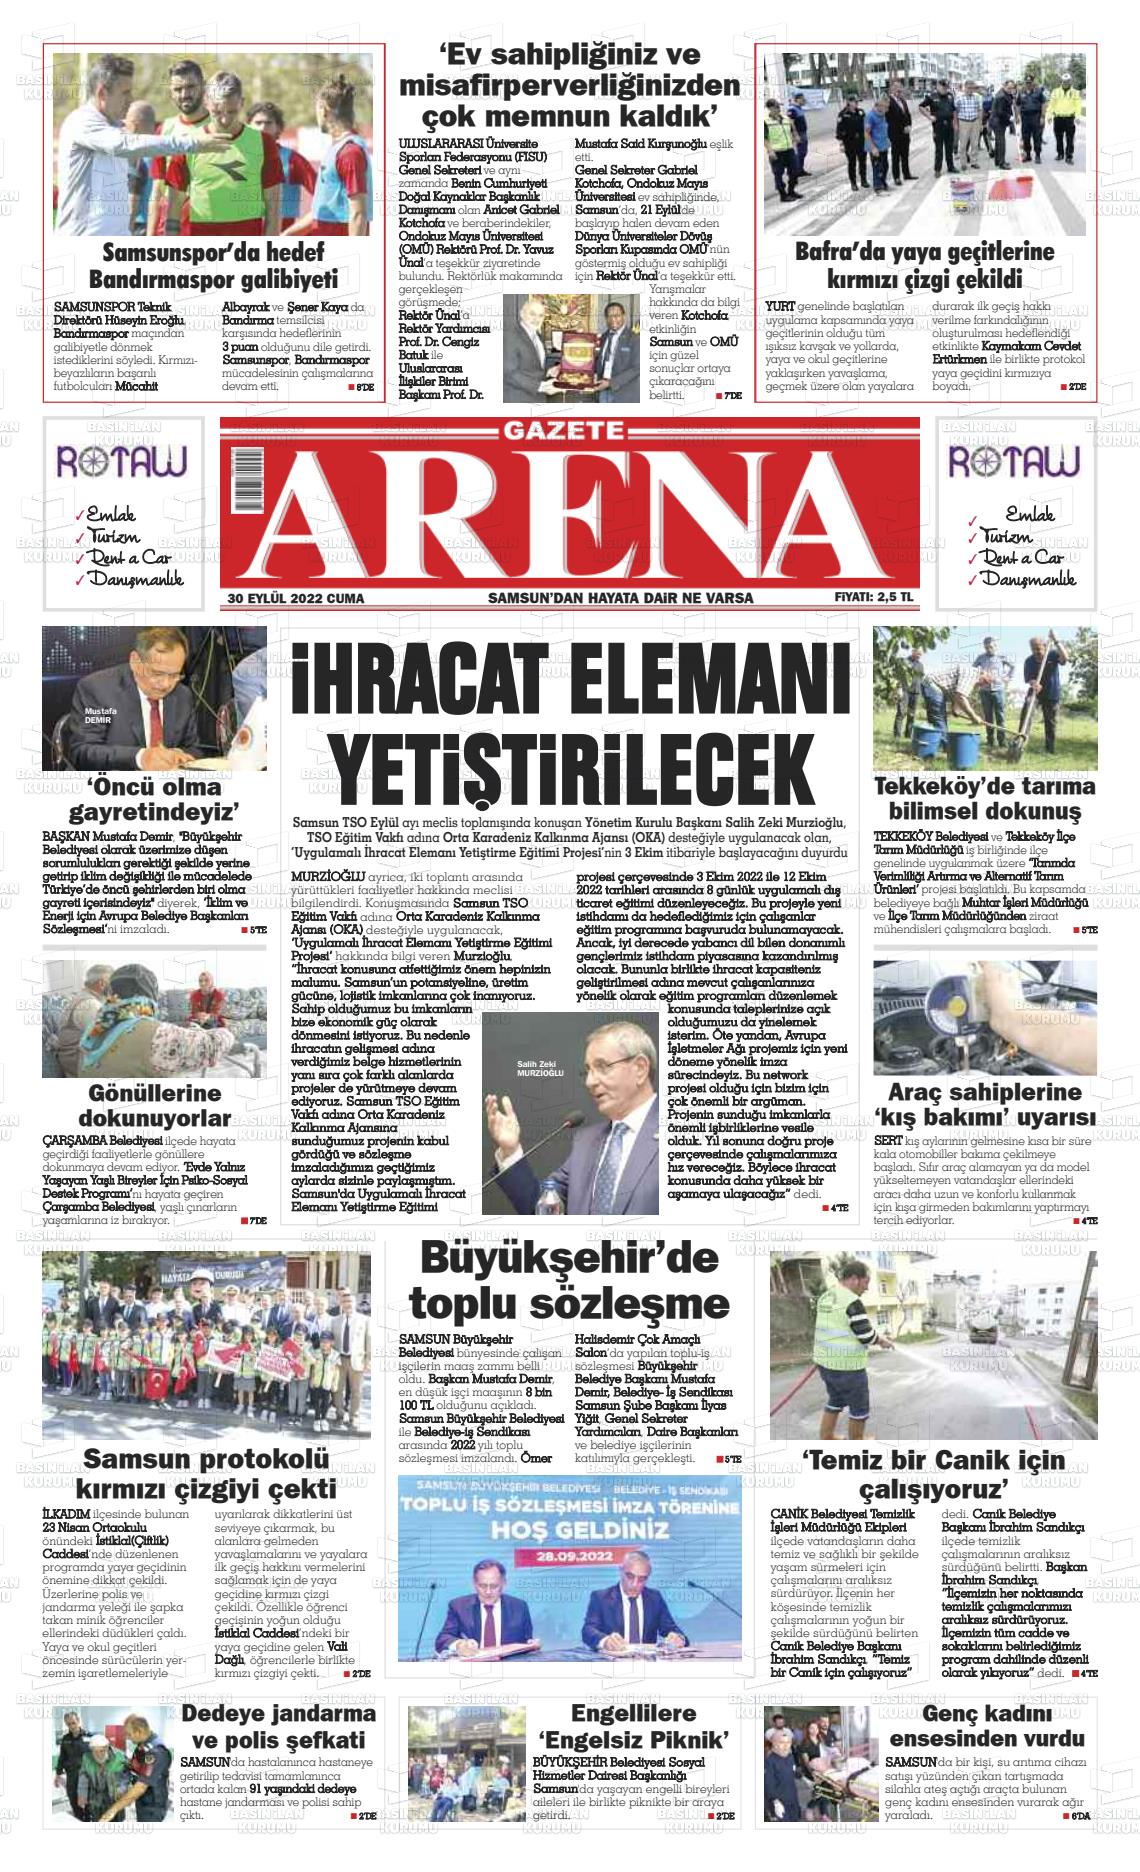 30 Eylül 2022 Arena Gazete Manşeti